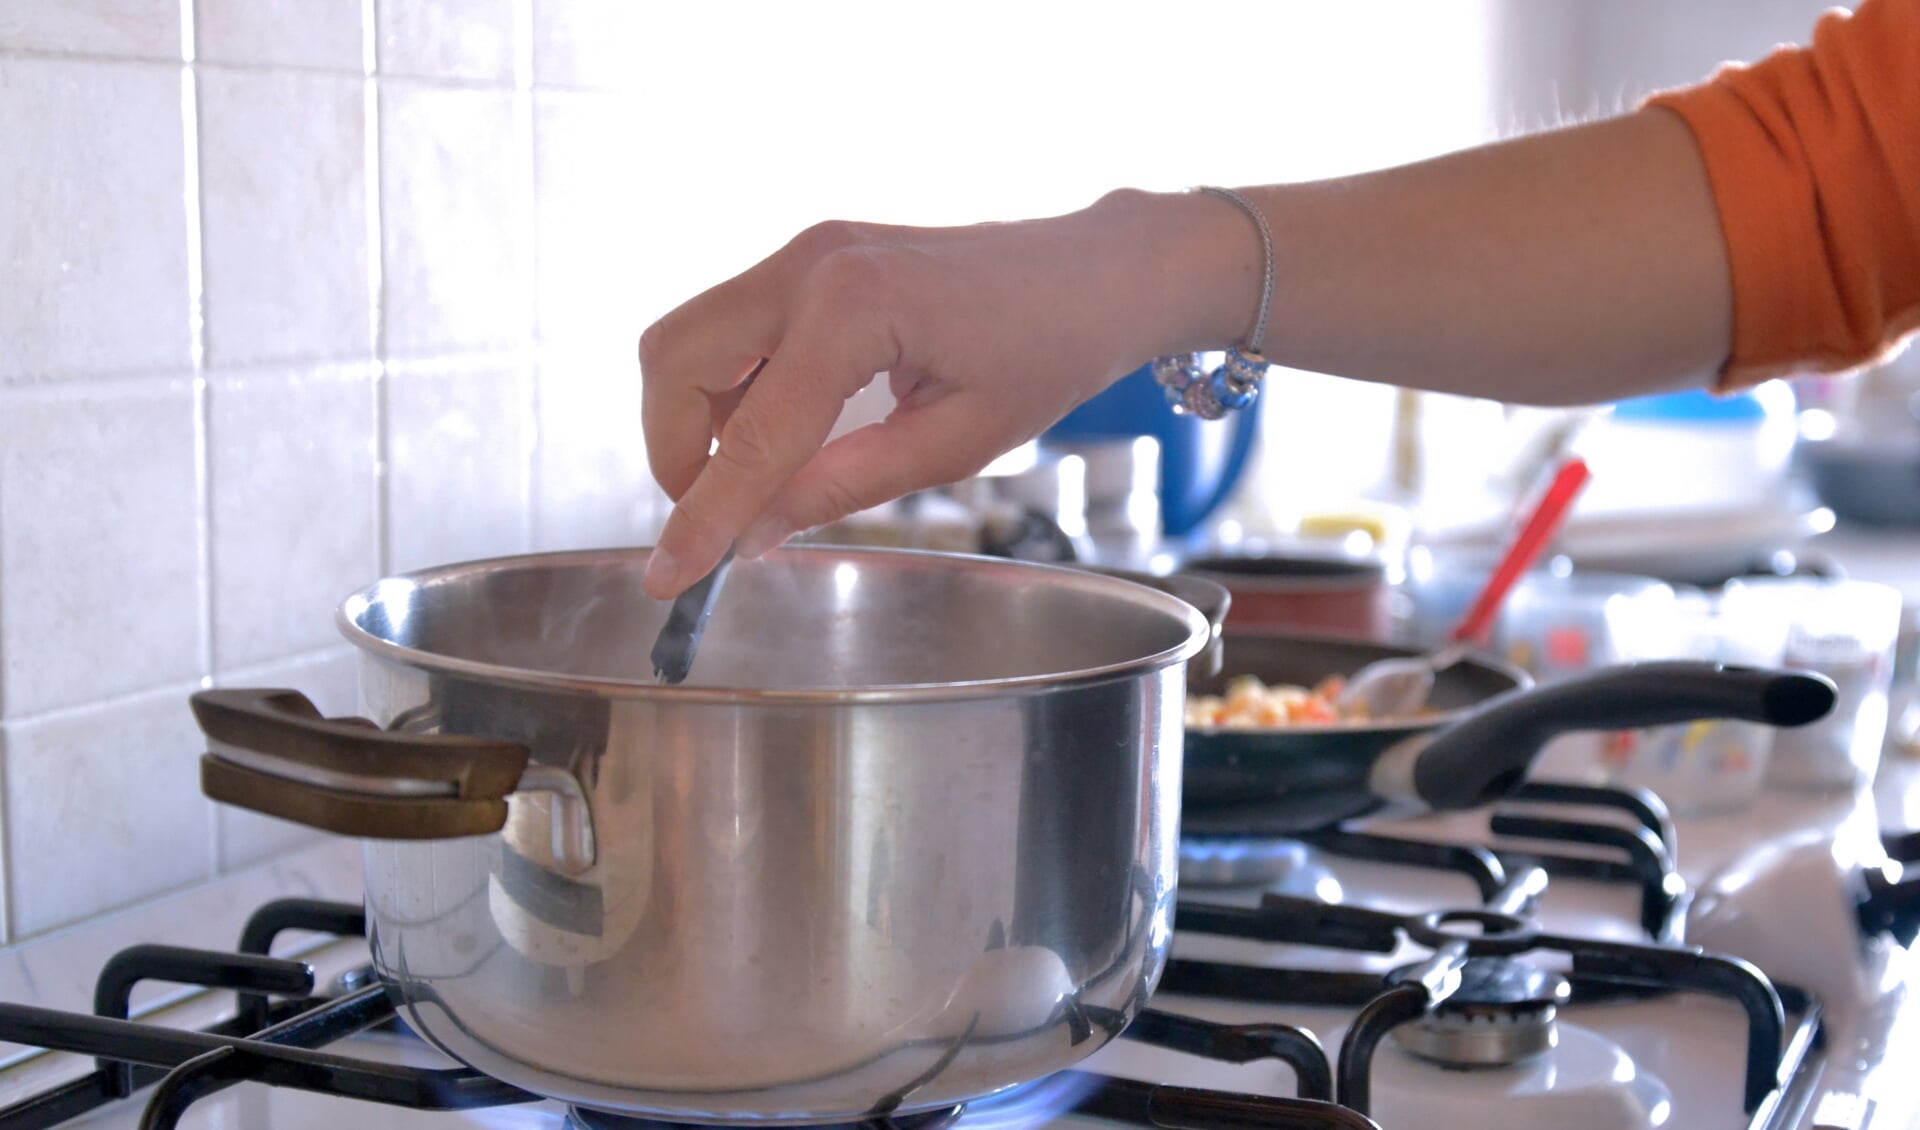 Wat schaft de pot tijdens kook en kuiern? Dat moeten de deelnemers zelf gaan ervaren...